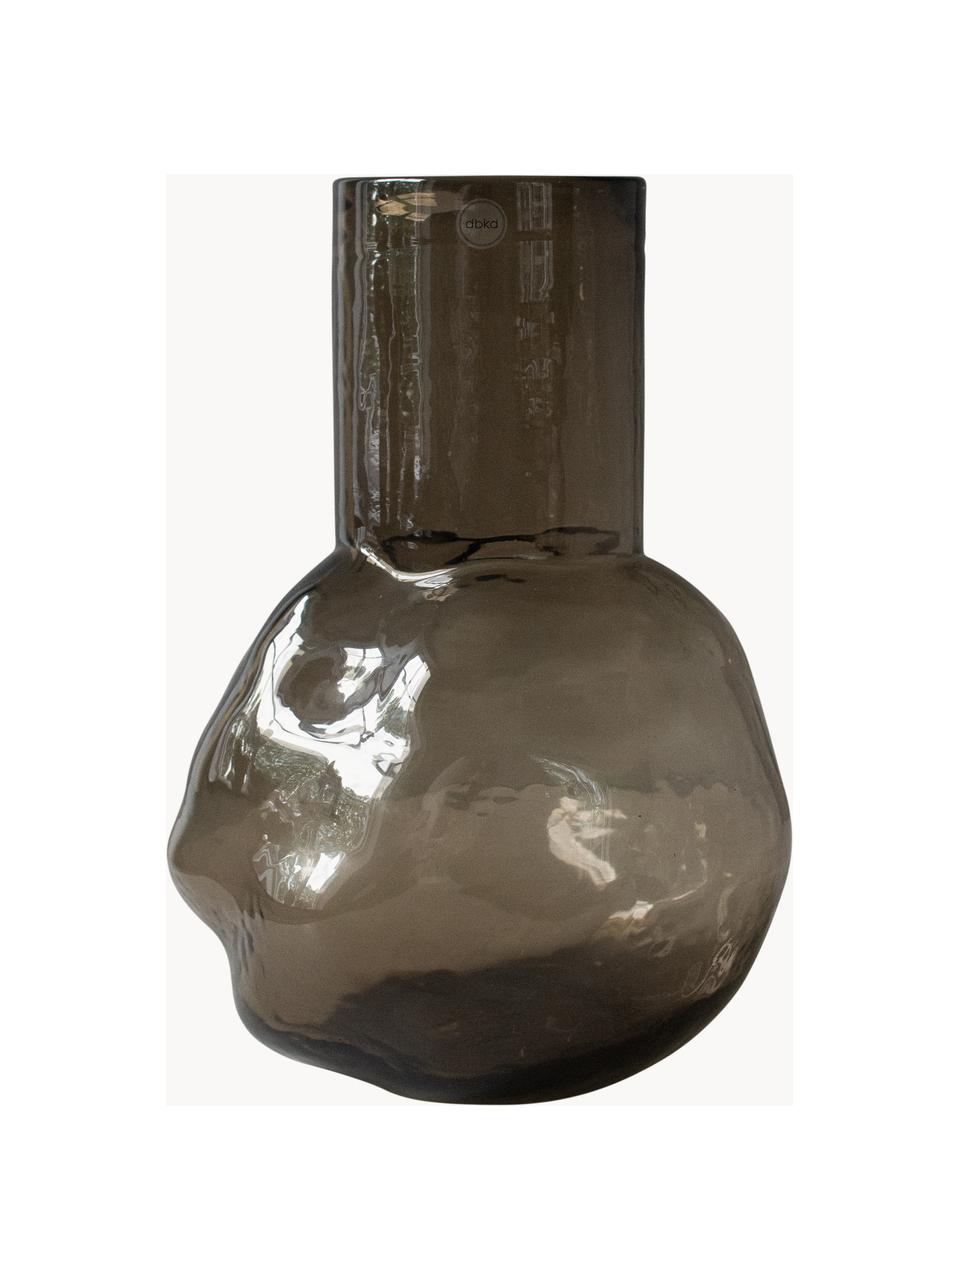 Skleněná váza Bunch, V 30 cm, Sklo, Greige, poloprůhledná, Š 20 cm, V 30 cm